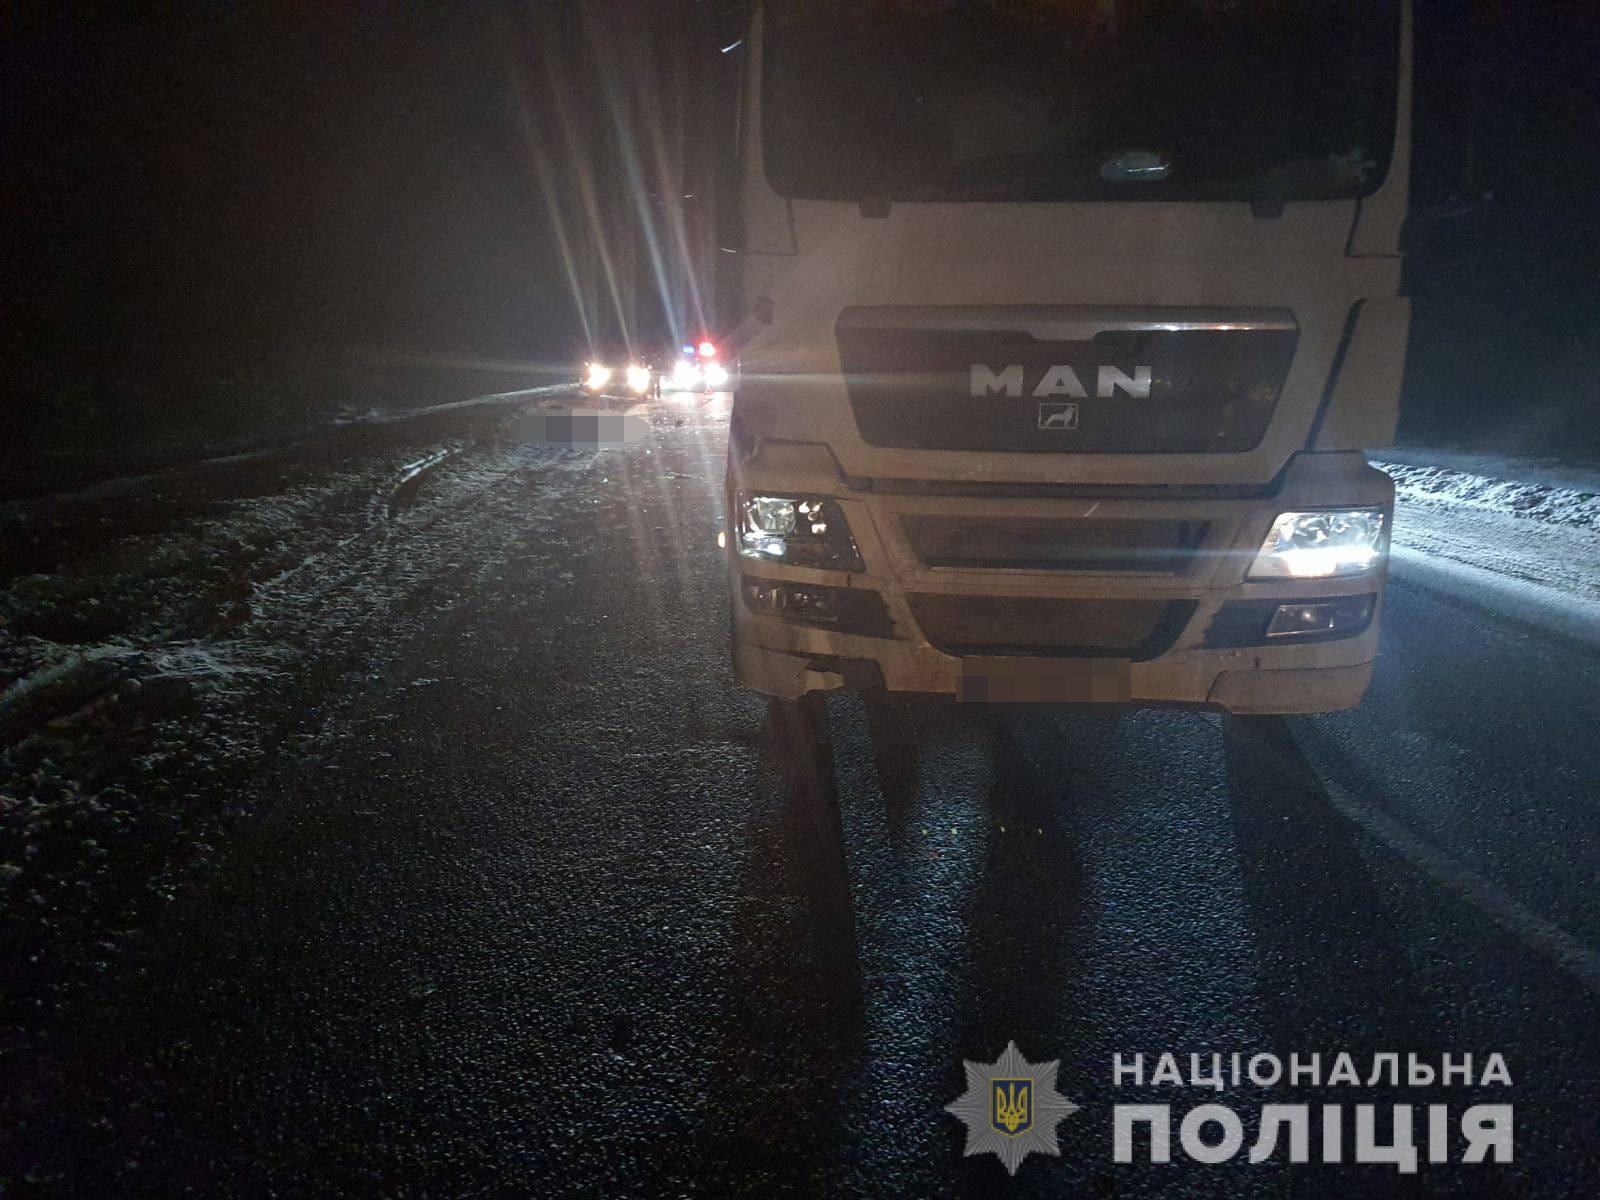 Полиция выясняет обстоятельства смертельного ДТП на Харьковщине